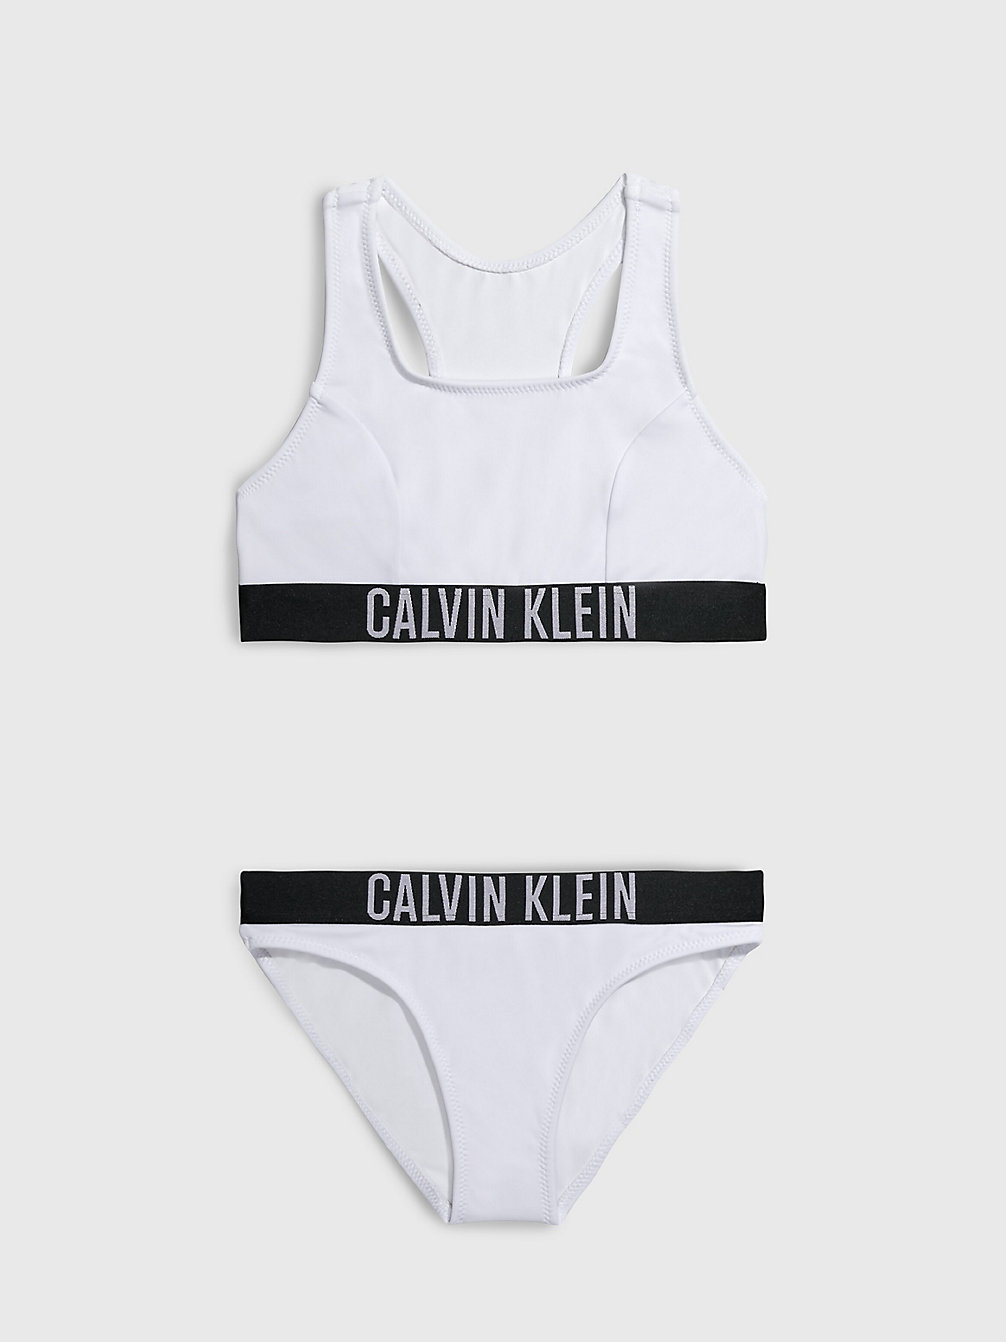 PVH CLASSIC WHITE Meisjesbralette Bikini - Intense Power undefined meisjes Calvin Klein